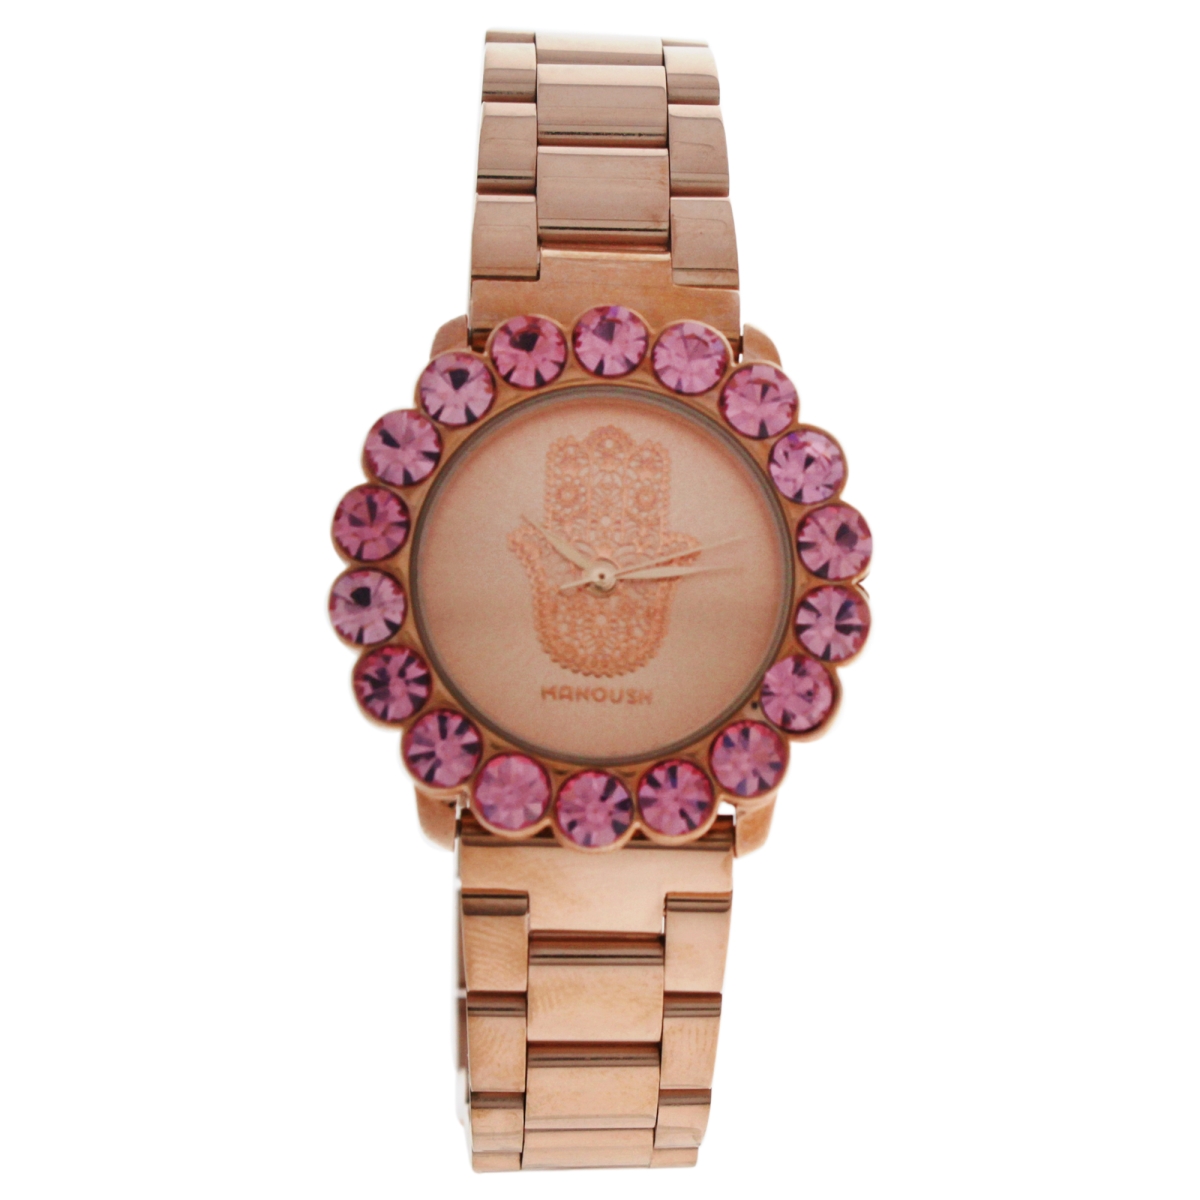 W-wat-1505 Mshscrg Scarlett Hand - Stainless Steel Bracelet Watch For Women, Rose Gold